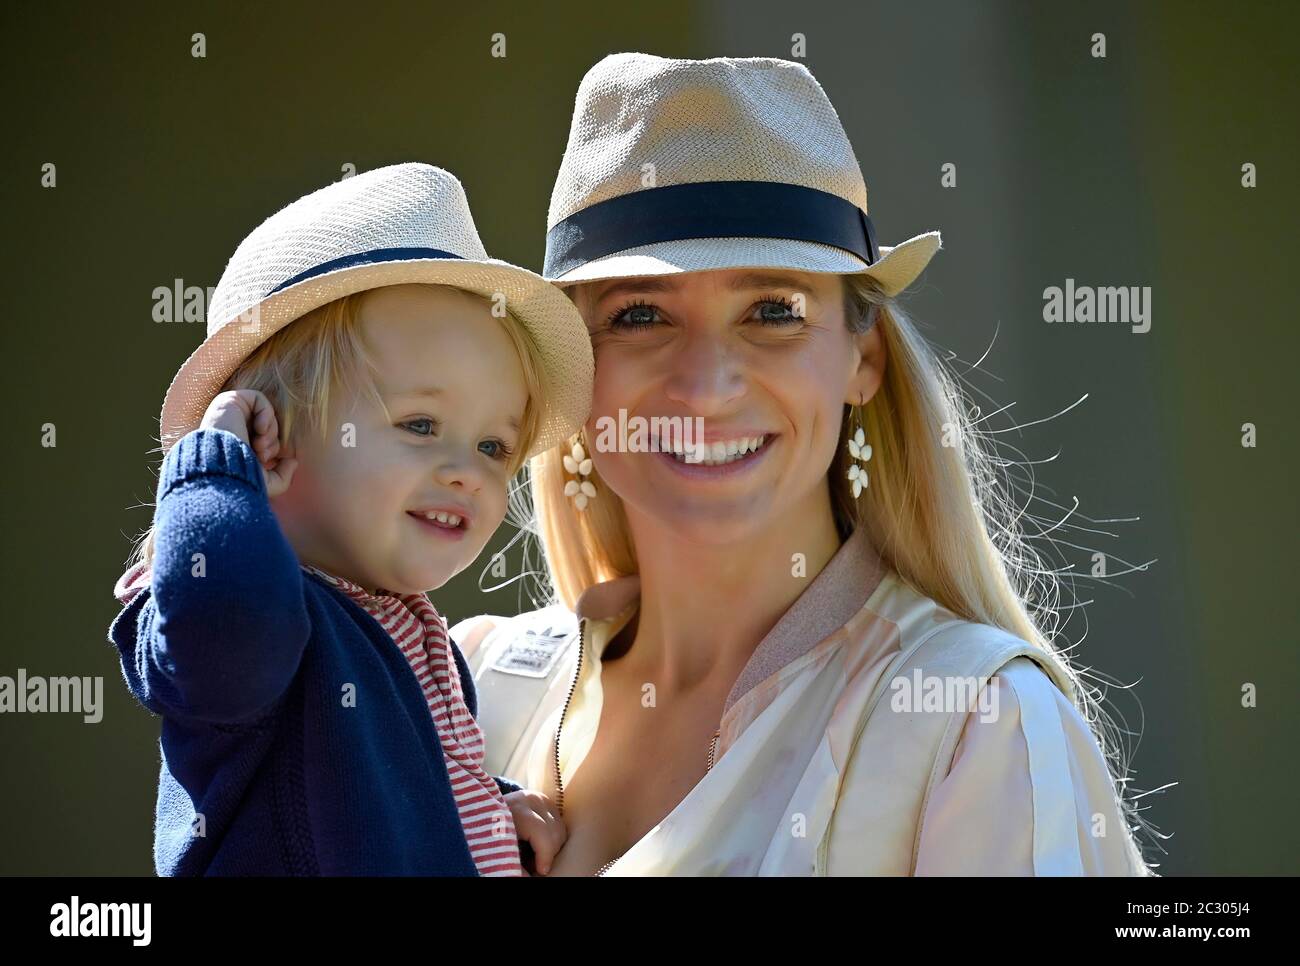 Mutter, die Sohn hält, 19 Monate, in den Armen, beide mit ähnlichem Hut, Stuttgart Baden-Württemberg, Deutschland Stockfoto